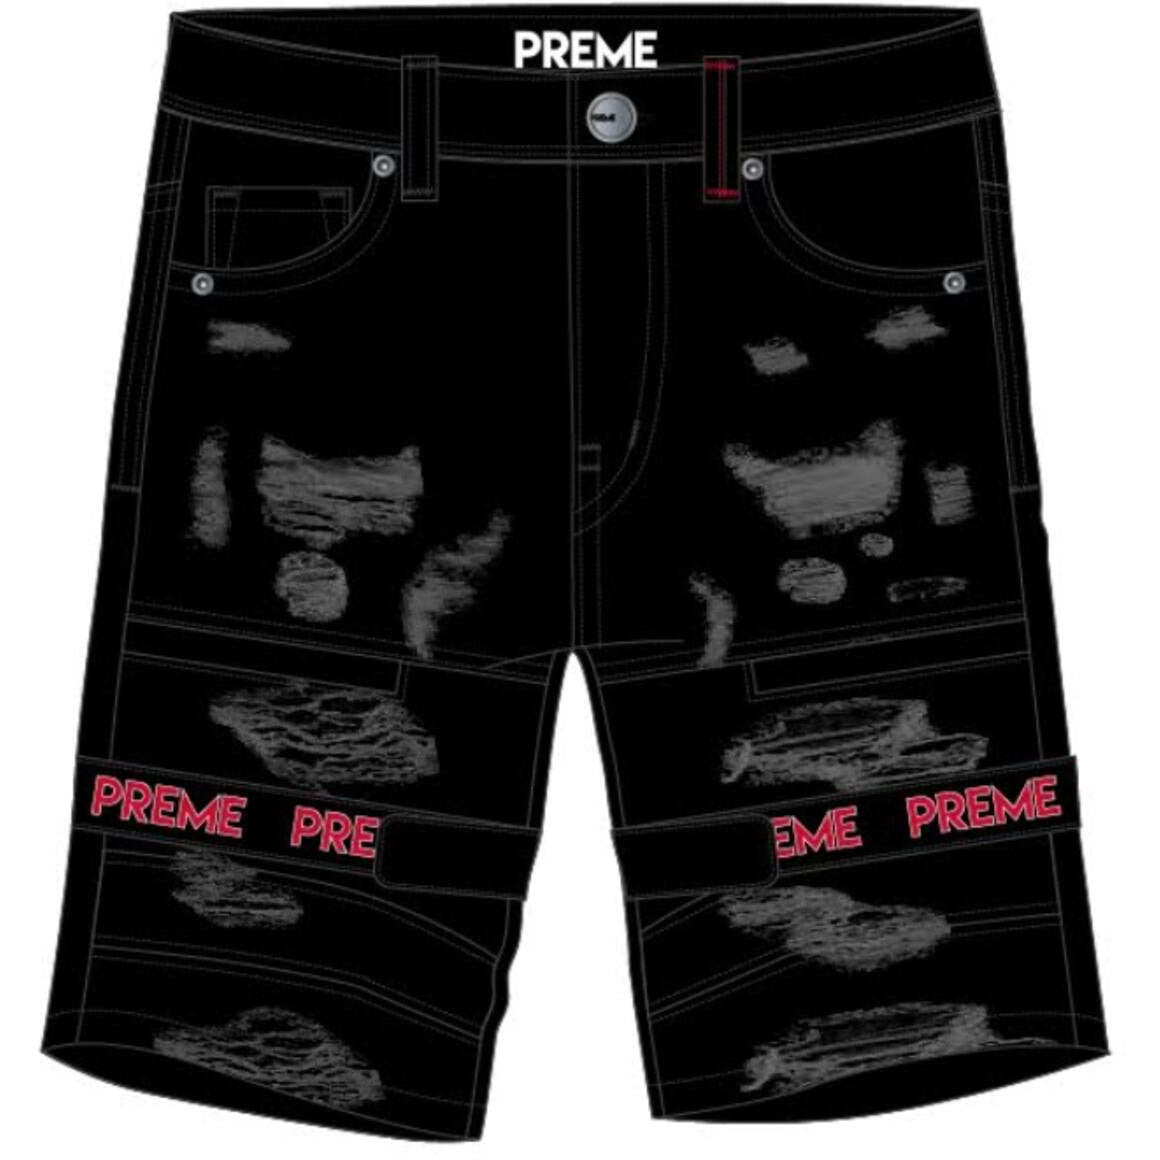 Preme Shorts Buffalo Black w/Red Strap (PR-WB-847)